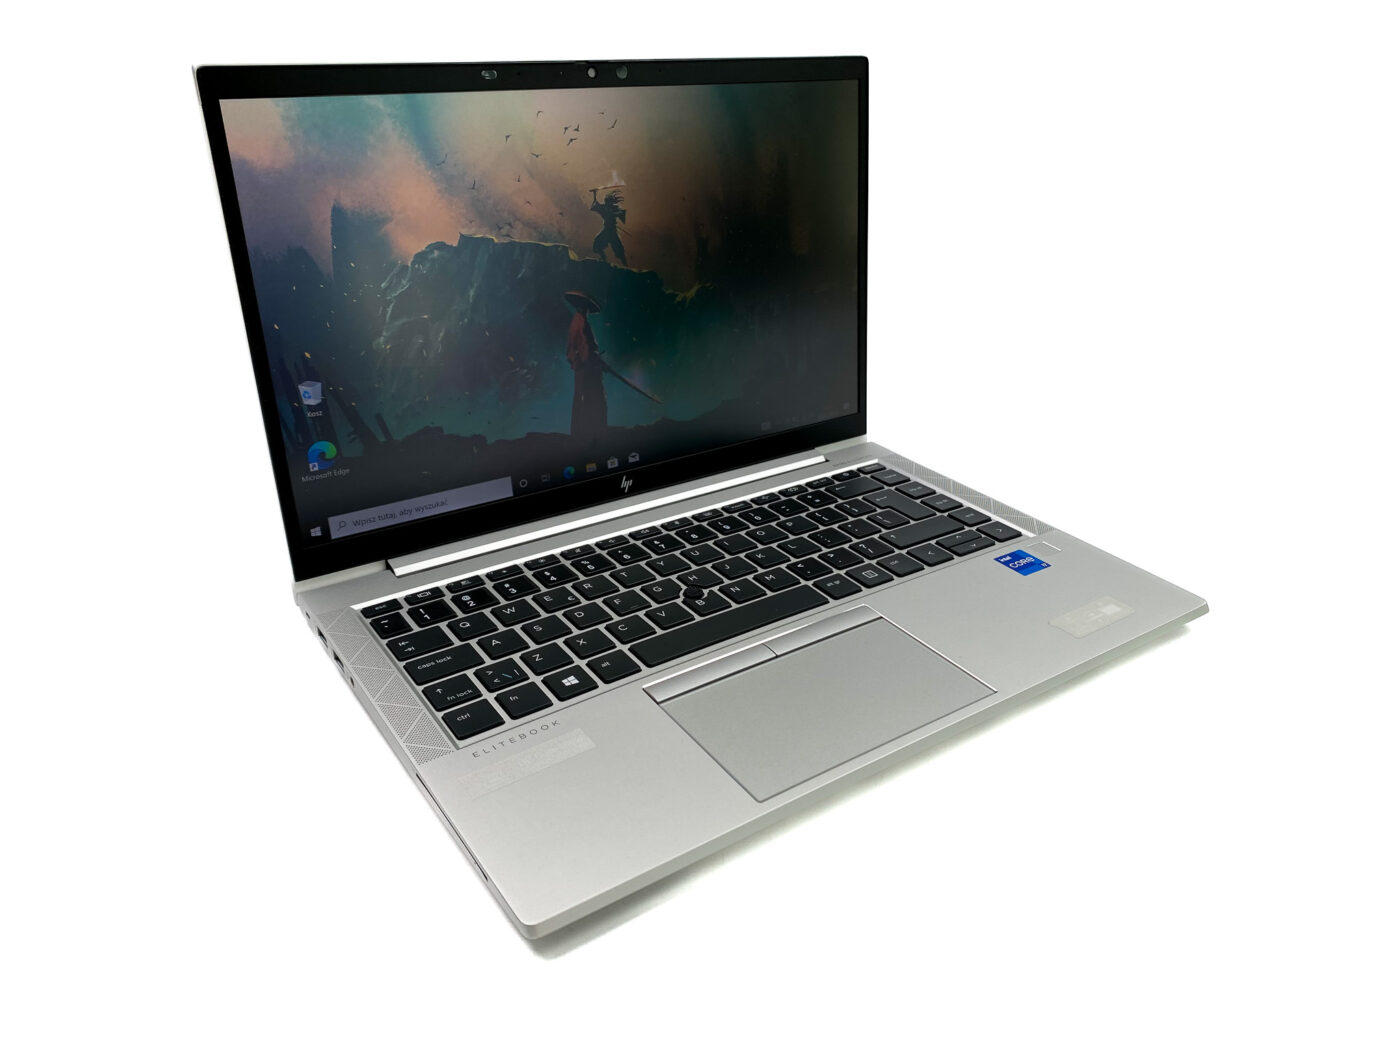 HP EliteBook 840 G8 - Twój mobilny sekret sukcesu! Odkryj smukły i lekki laptop HP EliteBook 840 G8, zaprojektowany dla mobilnych profesjonalistów.